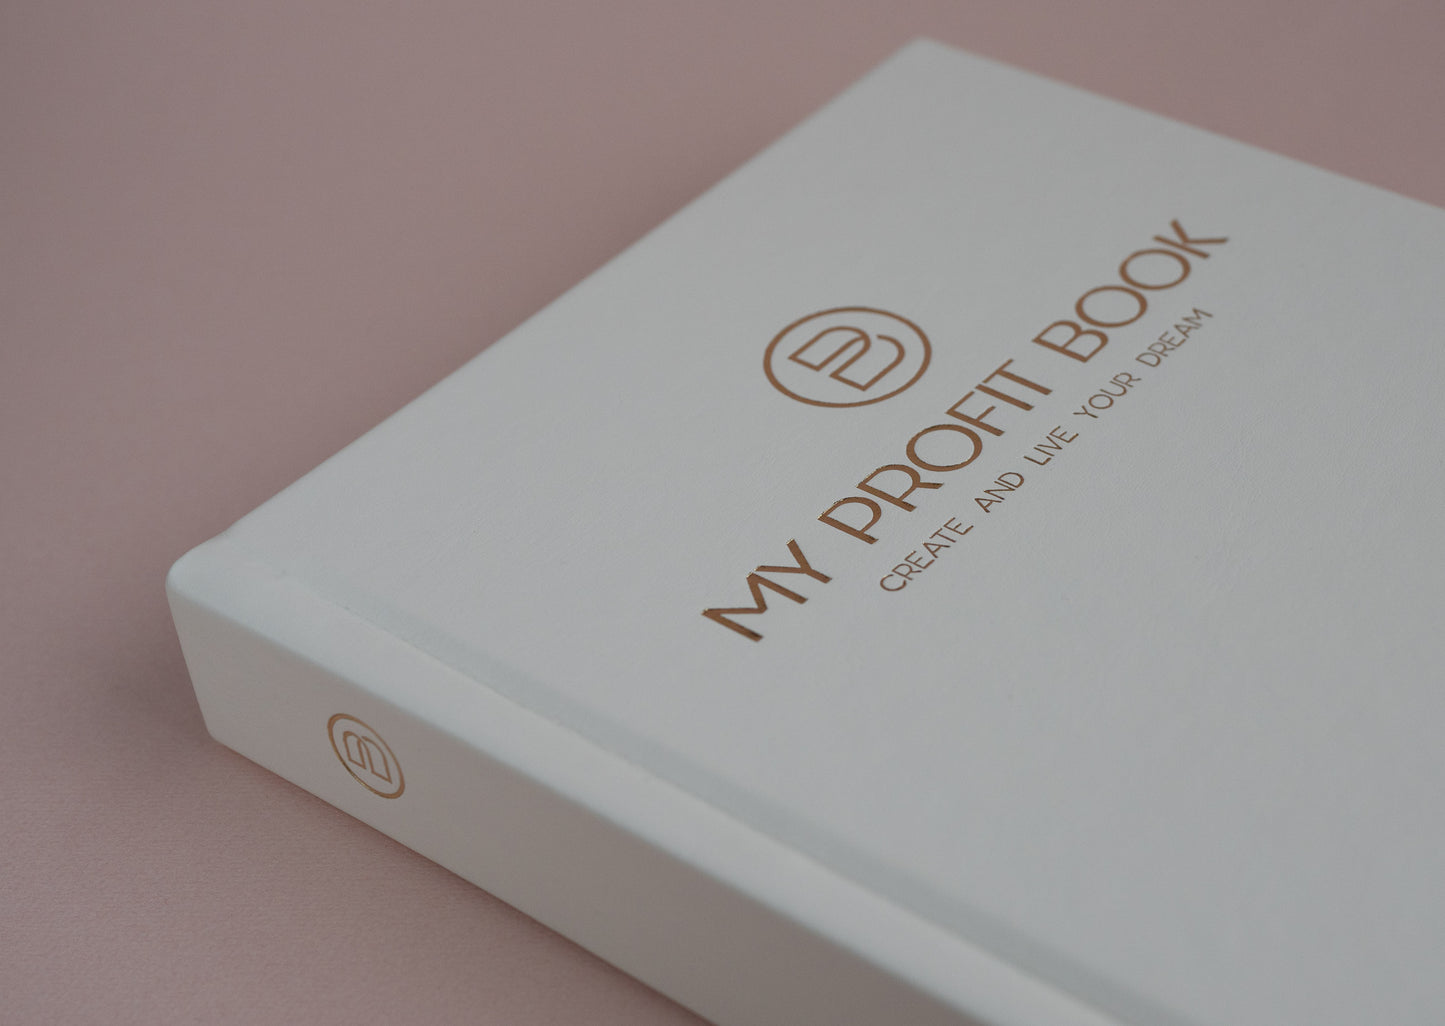 MyProfitBook - Soft White